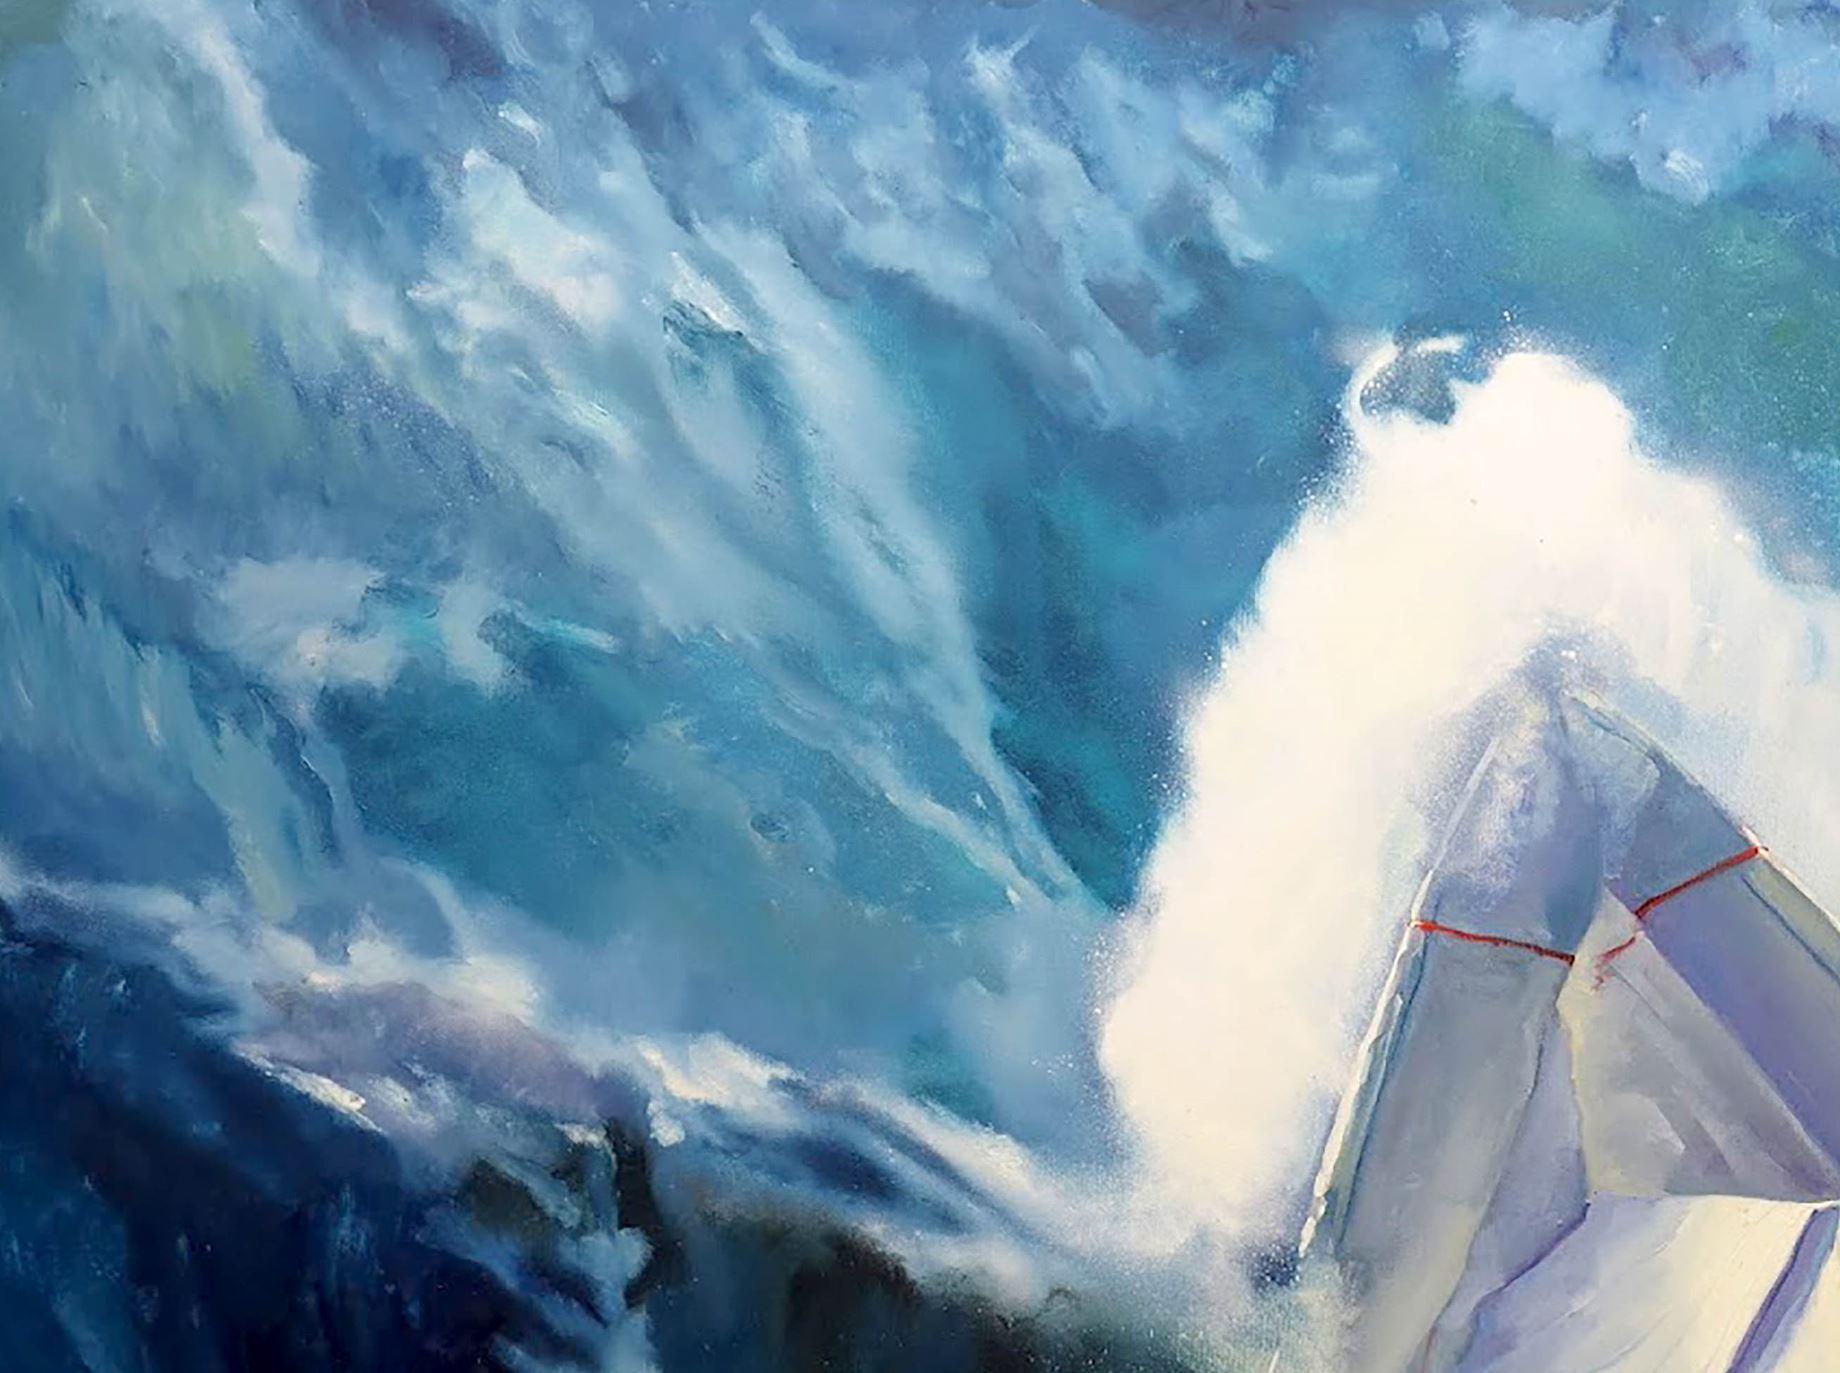 Artiste : Varvarov Anatoly Viktorovich
Titre : Storm,
Taille : 135x175 cm (53x69 inches)
Médium : Huile sur toile
Peint à la main, original, unique en son genre.

Si vous êtes à la recherche d'une œuvre qui ajoutera un peu d'excitation et de drame à